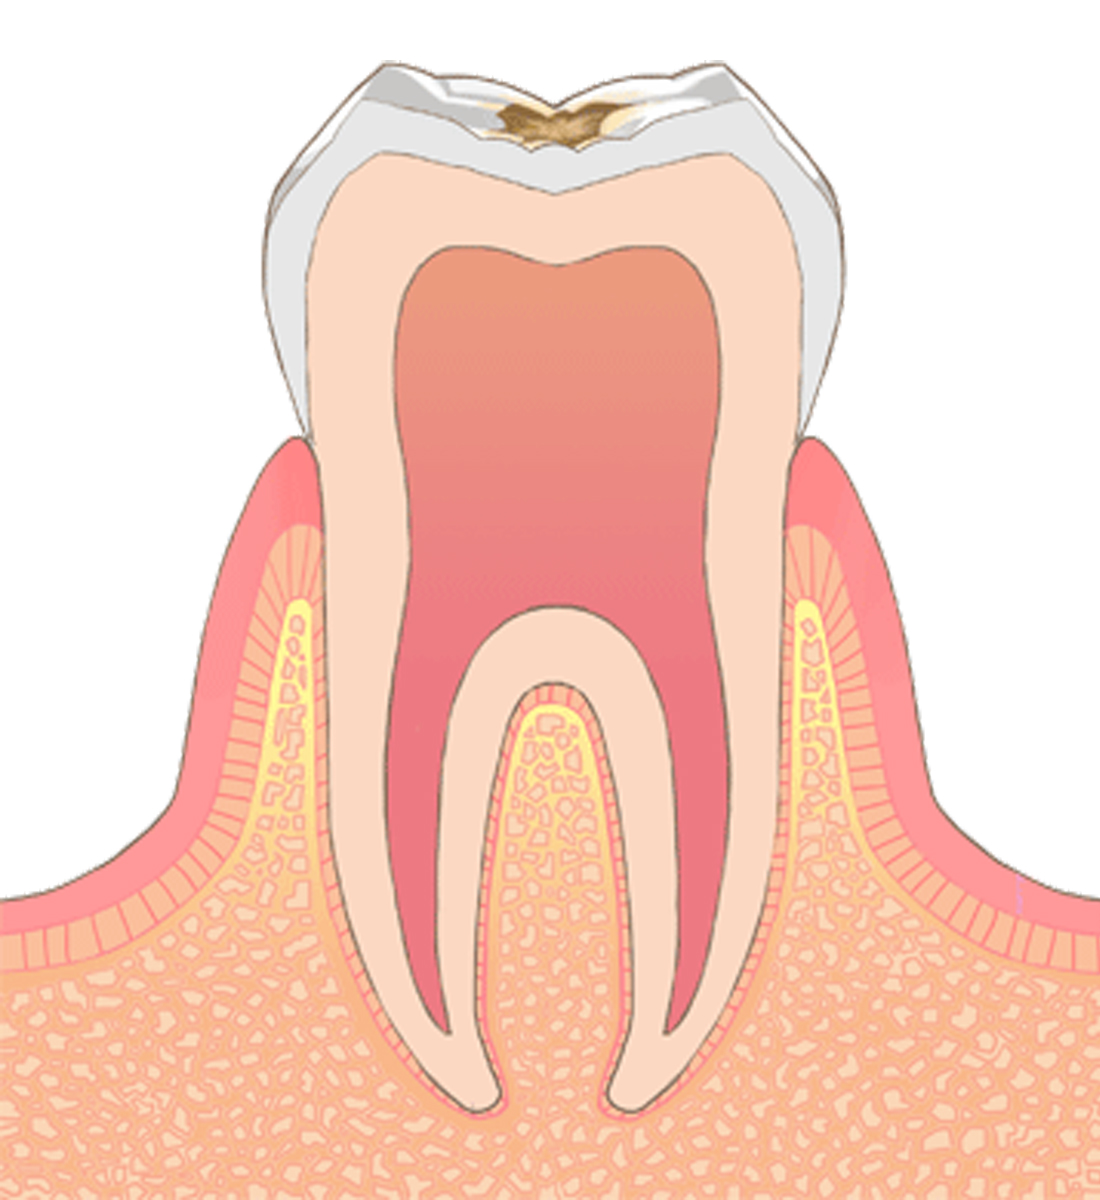 C1→虫歯の中期状態